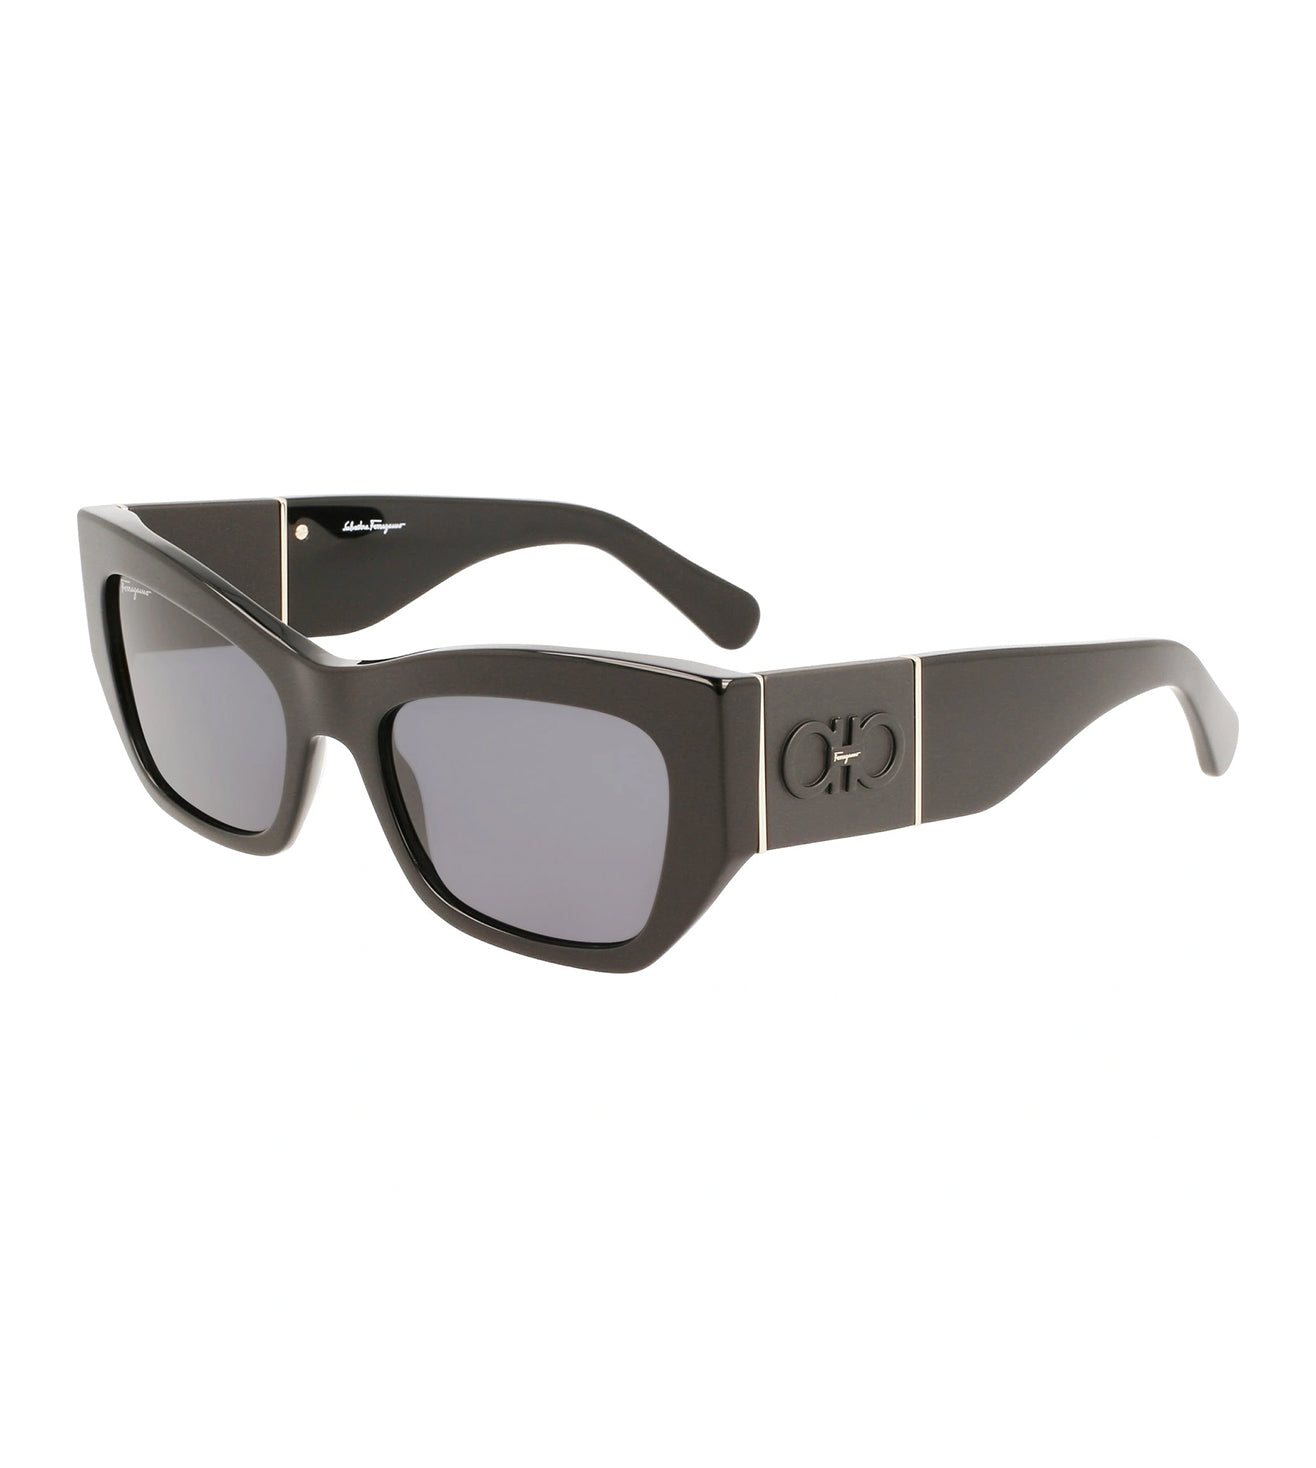 Salvatore Ferragamo Women's Grey Rectangular Sunglasses